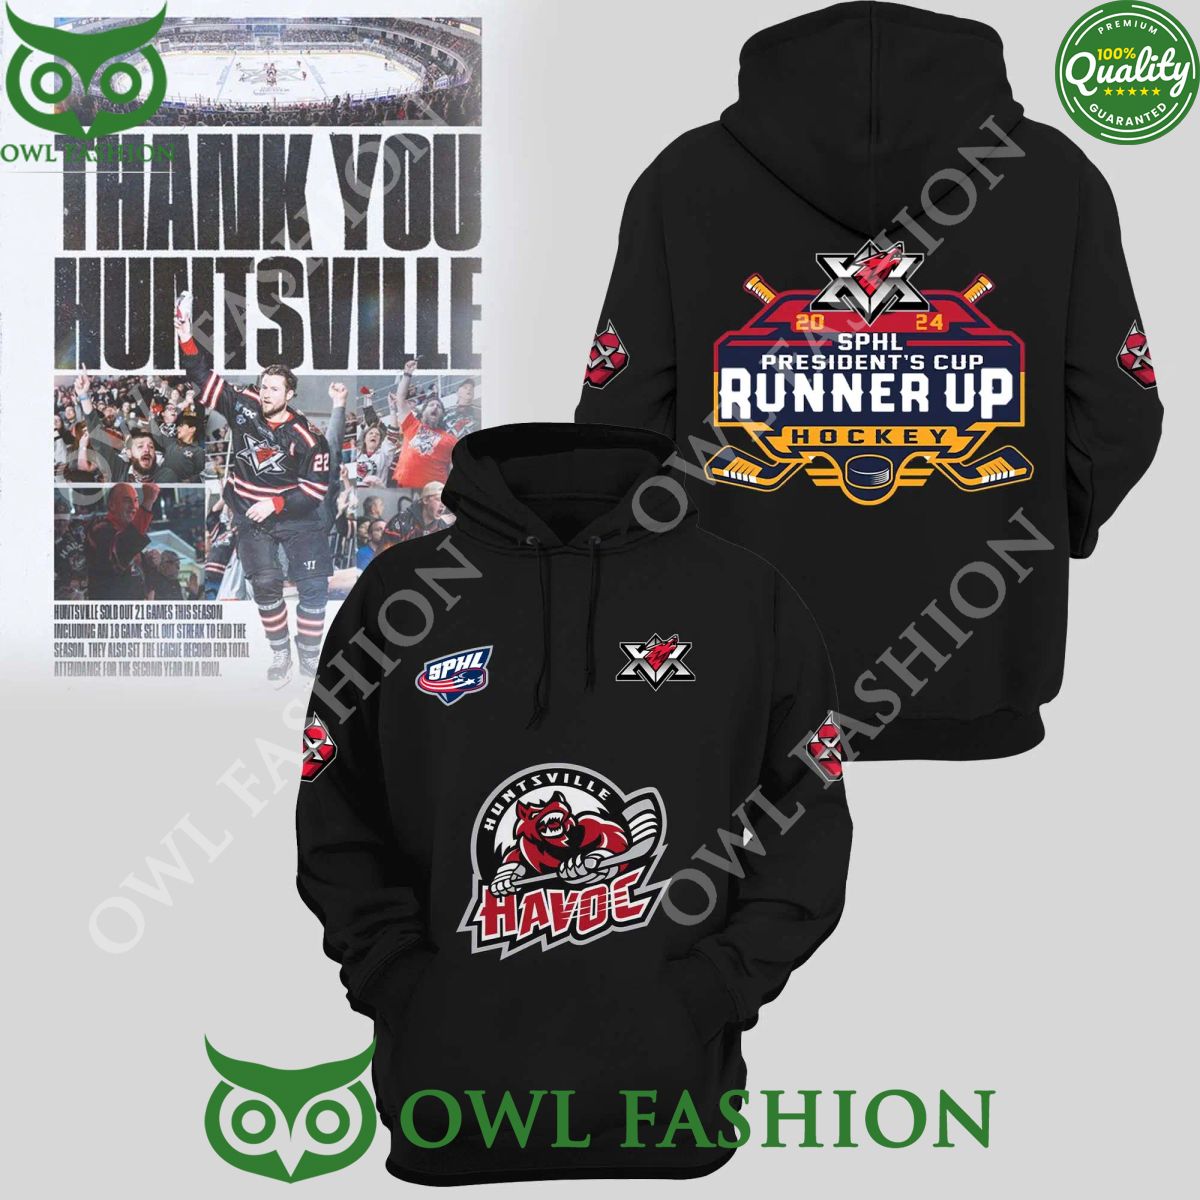 huntsville havoc presidents cup sphl 2024 hockey runner up 2d printed hoodie 1 9lRpX.jpg